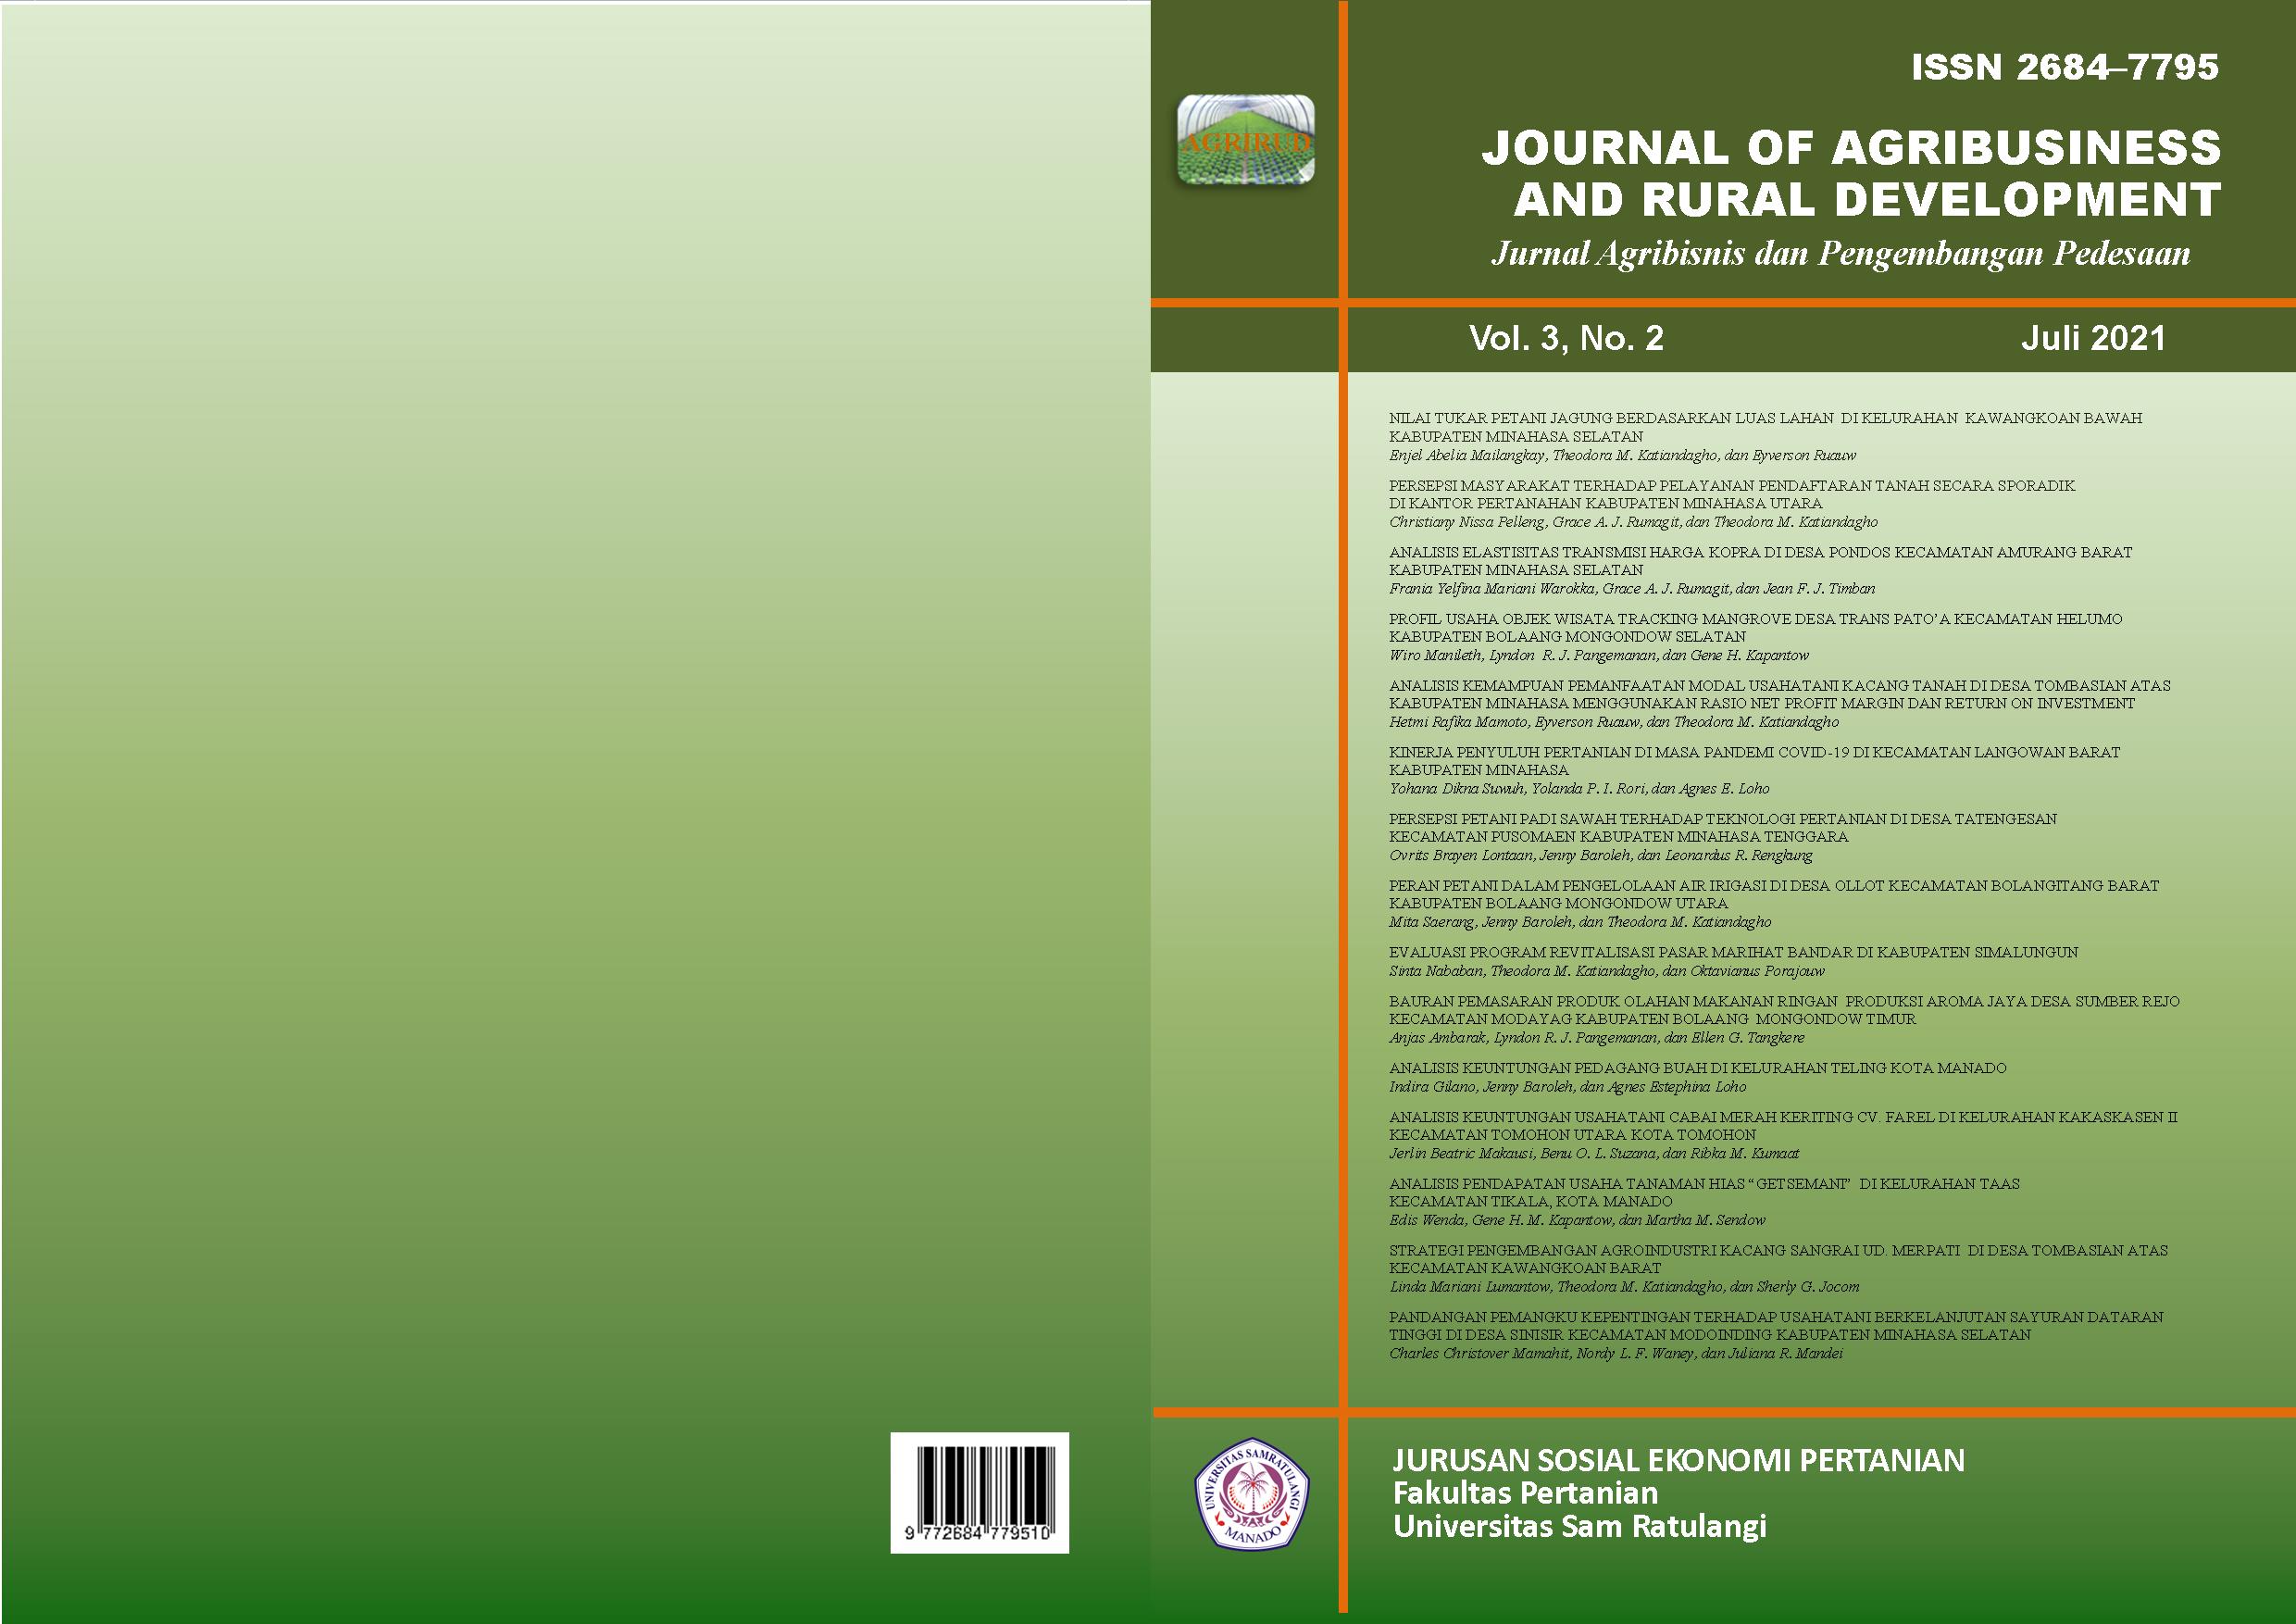 					View Vol. 3 No. 2 (2021): Journal of Agribusiness and Rural Development (Jurnal Agribisnis dan Pengembangan Pedesaan) - Juli 2021
				